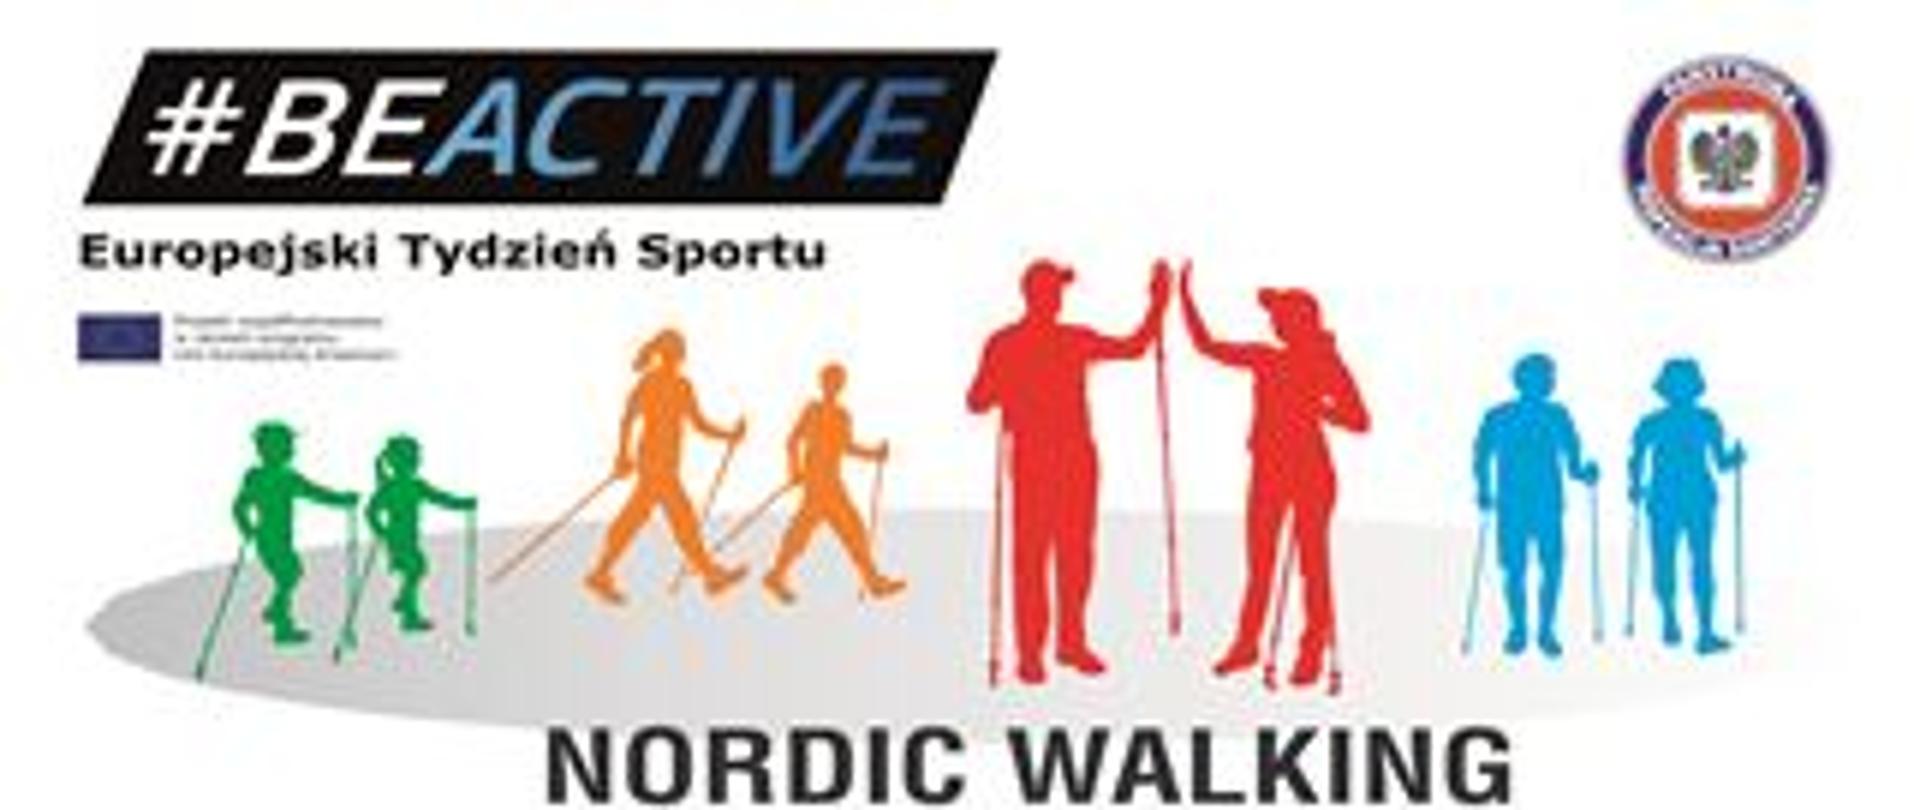 baner promujący NORDIC WALKING